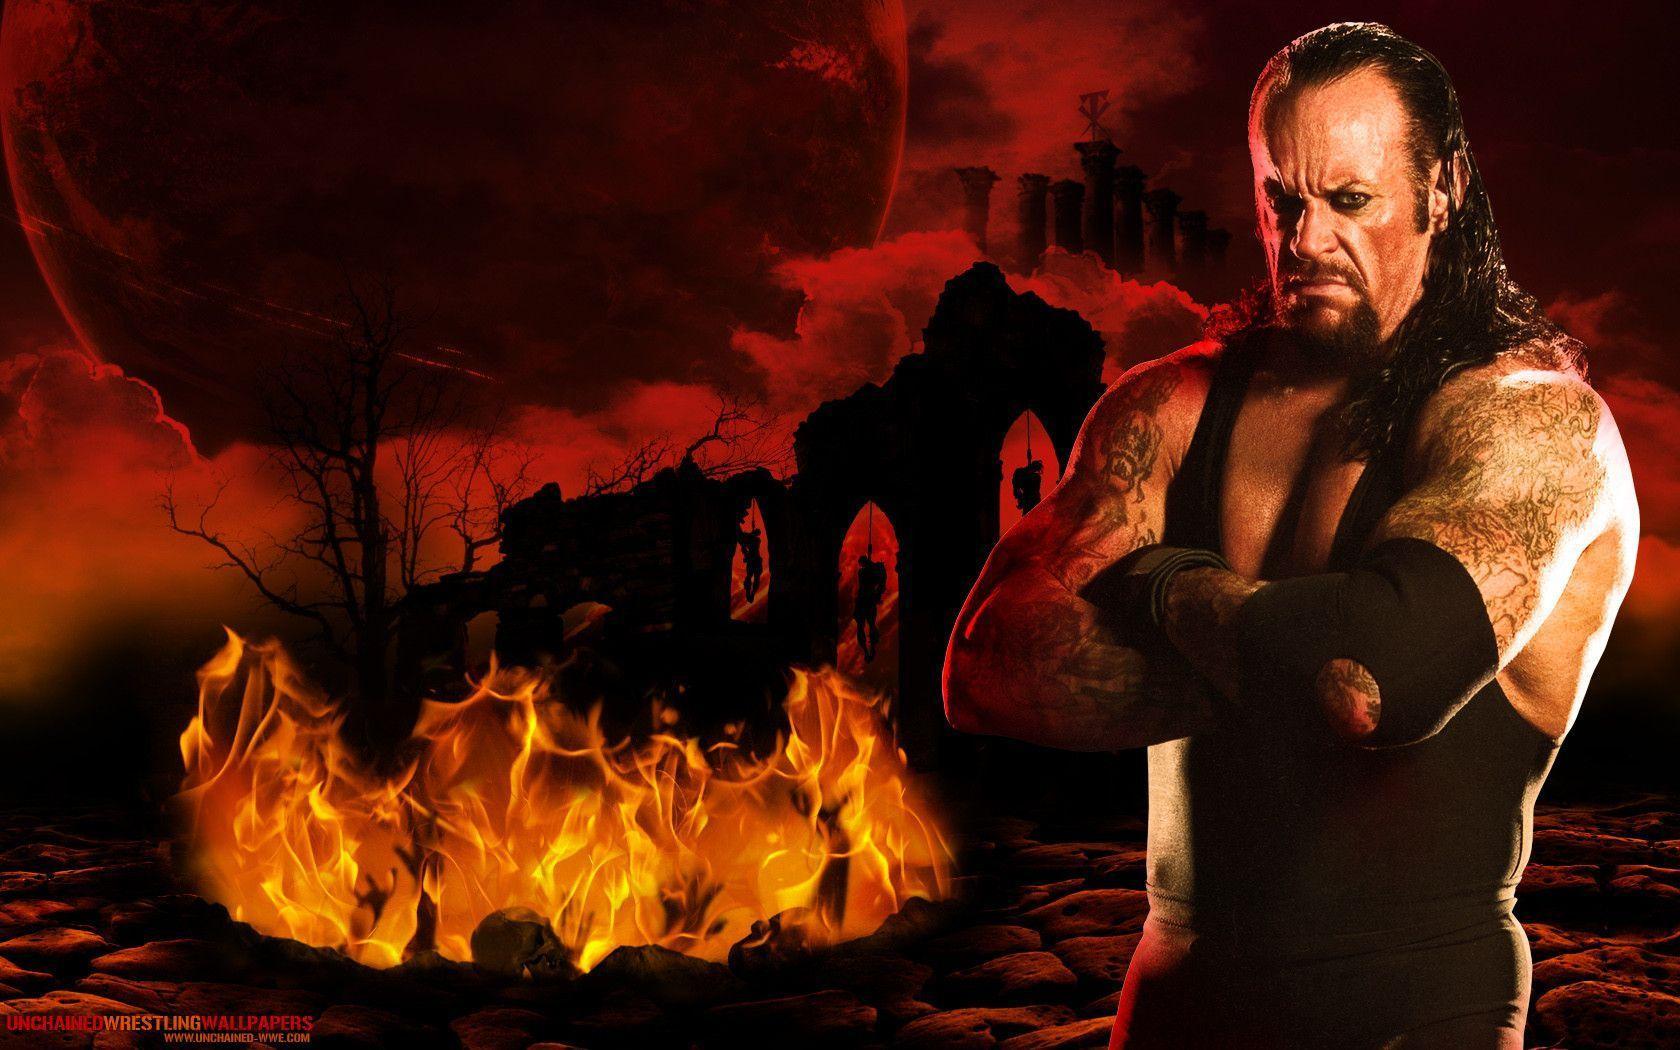 WWE Undertaker "Reaper Of Lost Souls" Wallpaper Unchained WWE